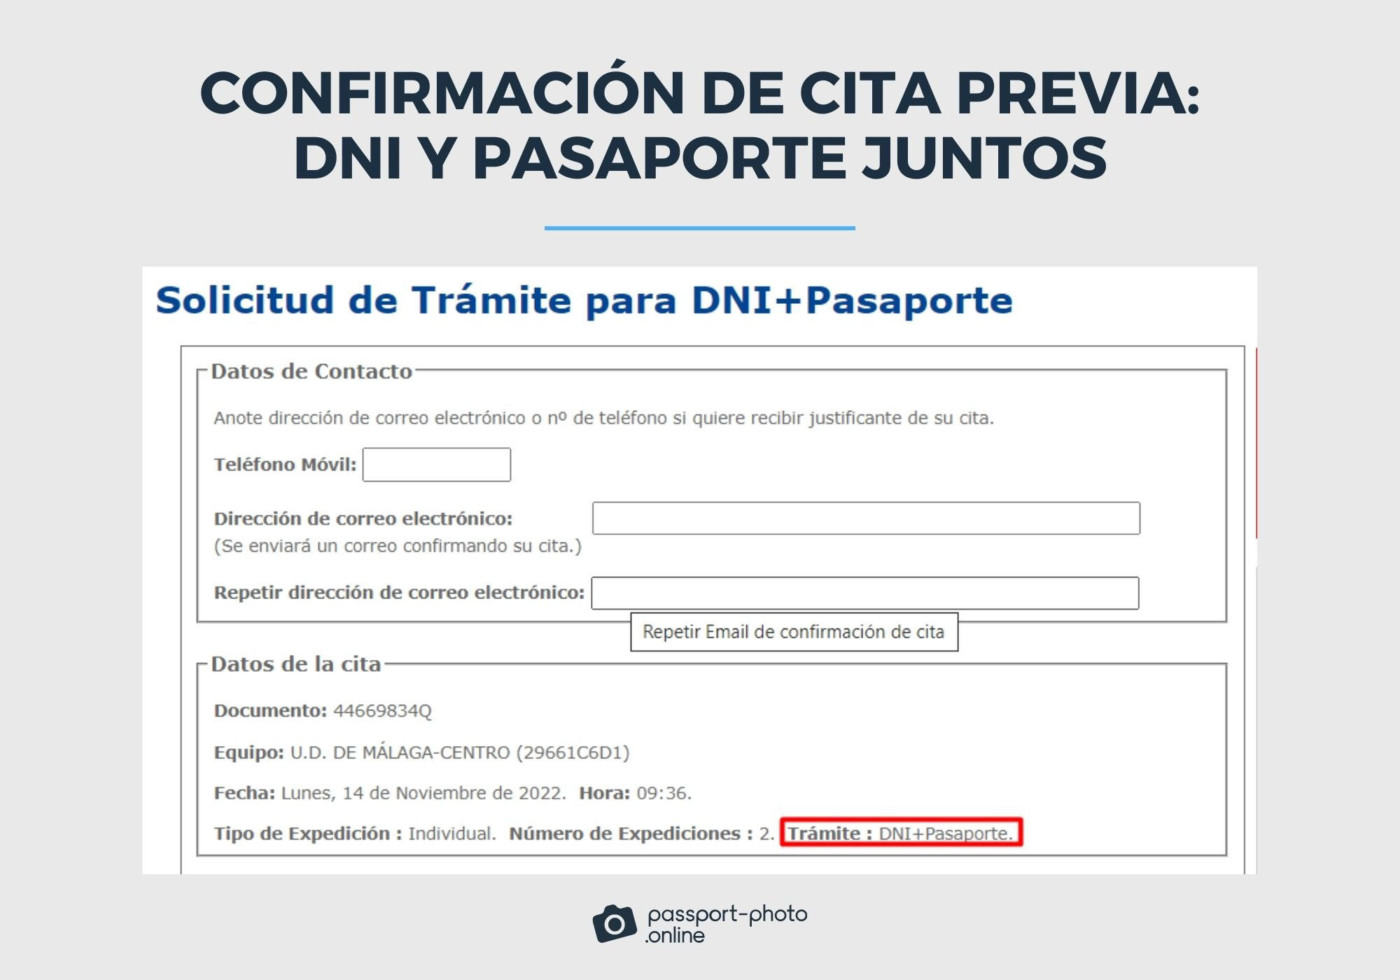 Pantalla donde se indican los datos de contacto del solicitante y datos de la cita para renovar DNI y pasaporte el mismo día.